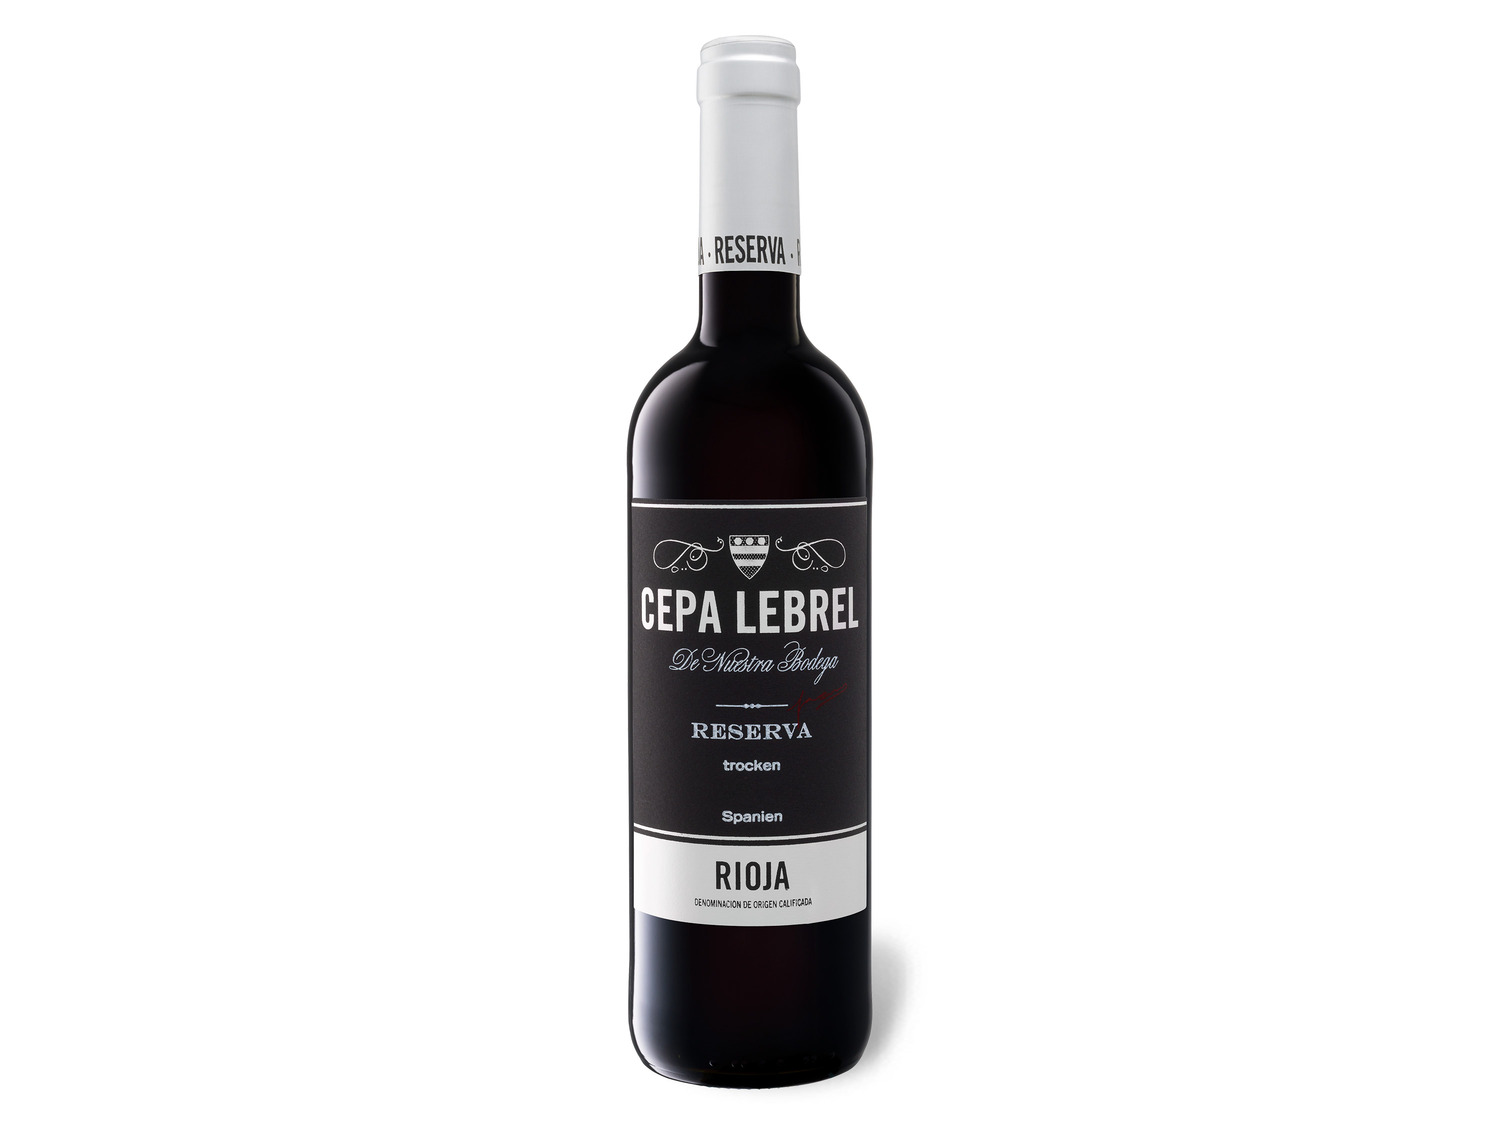 Reserva Rotwein DOCa trocken, 2017 Lebrel Cepa Rioja